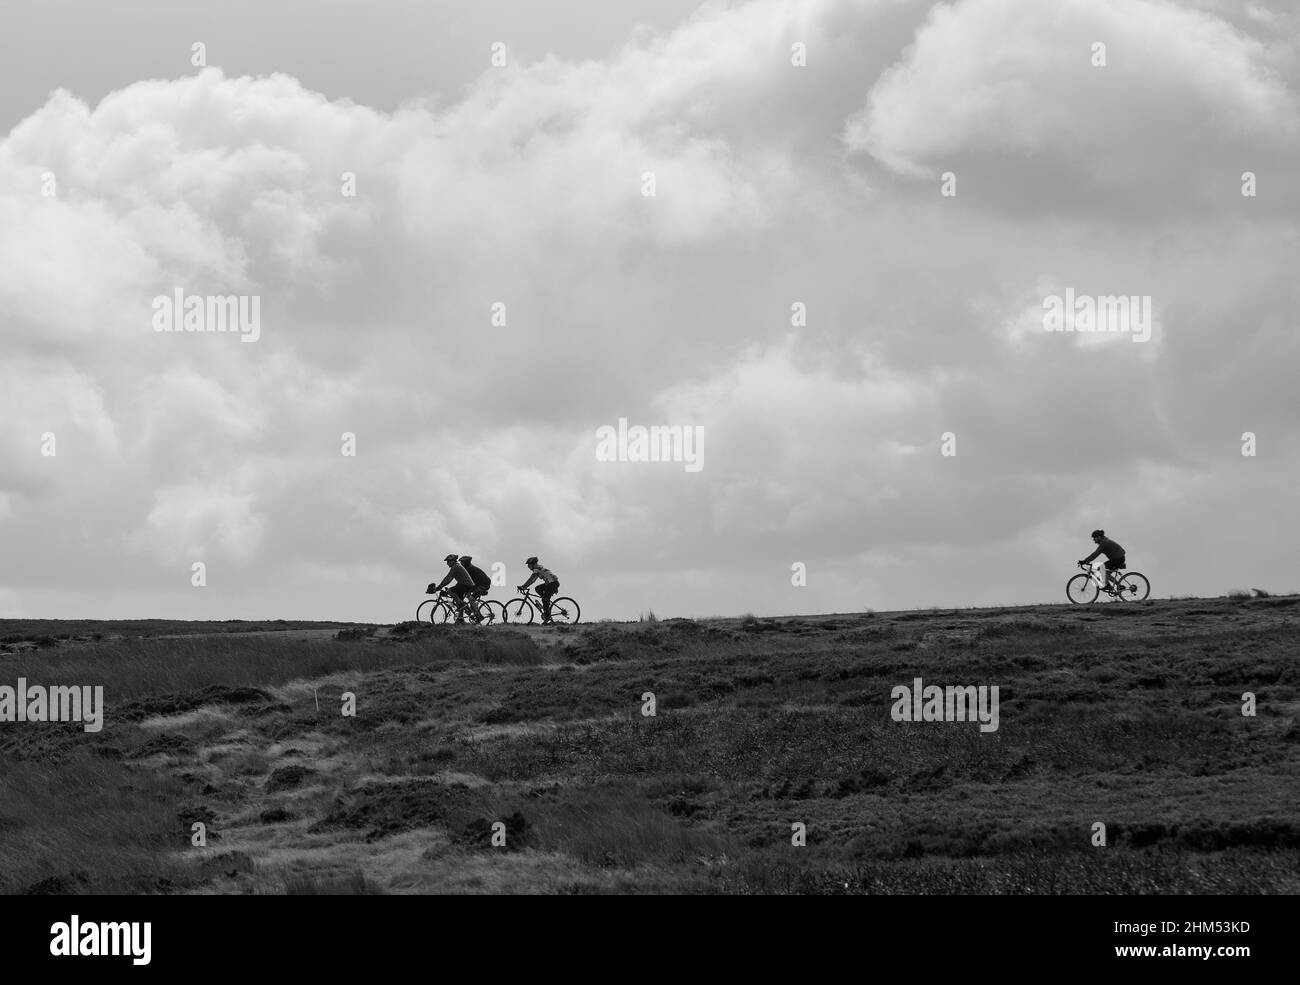 Schwarz-weiß-Bild von vier Radfahrern in Silhouette und am Horizont, während sie durch offene Moorlandschaft mit einem Hintergrund aus Wolken radeln Stockfoto